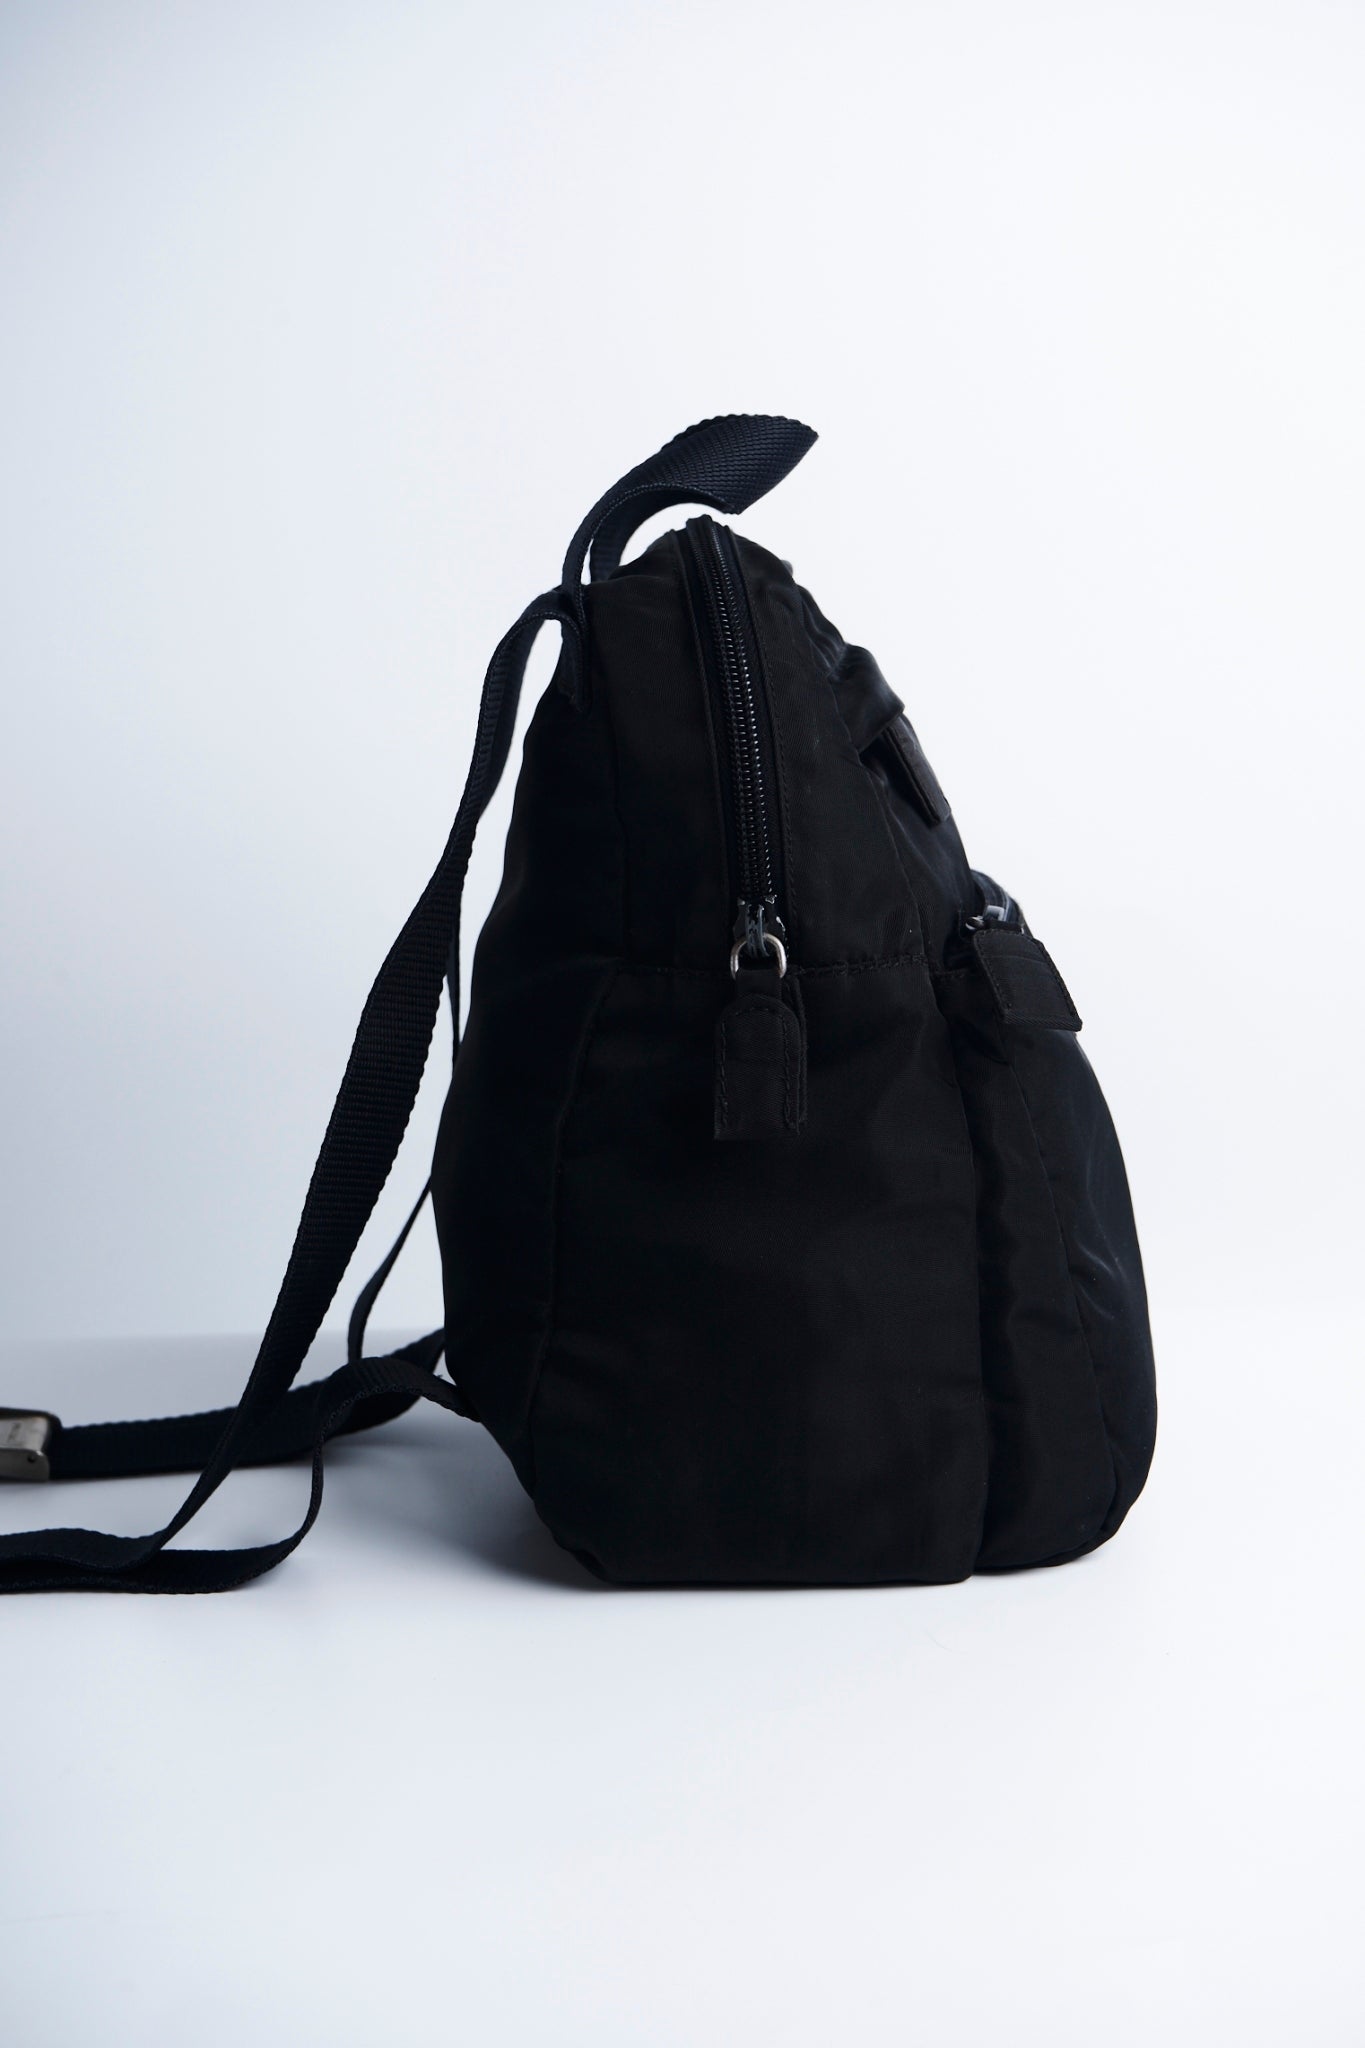 Prada nylon mini backpack